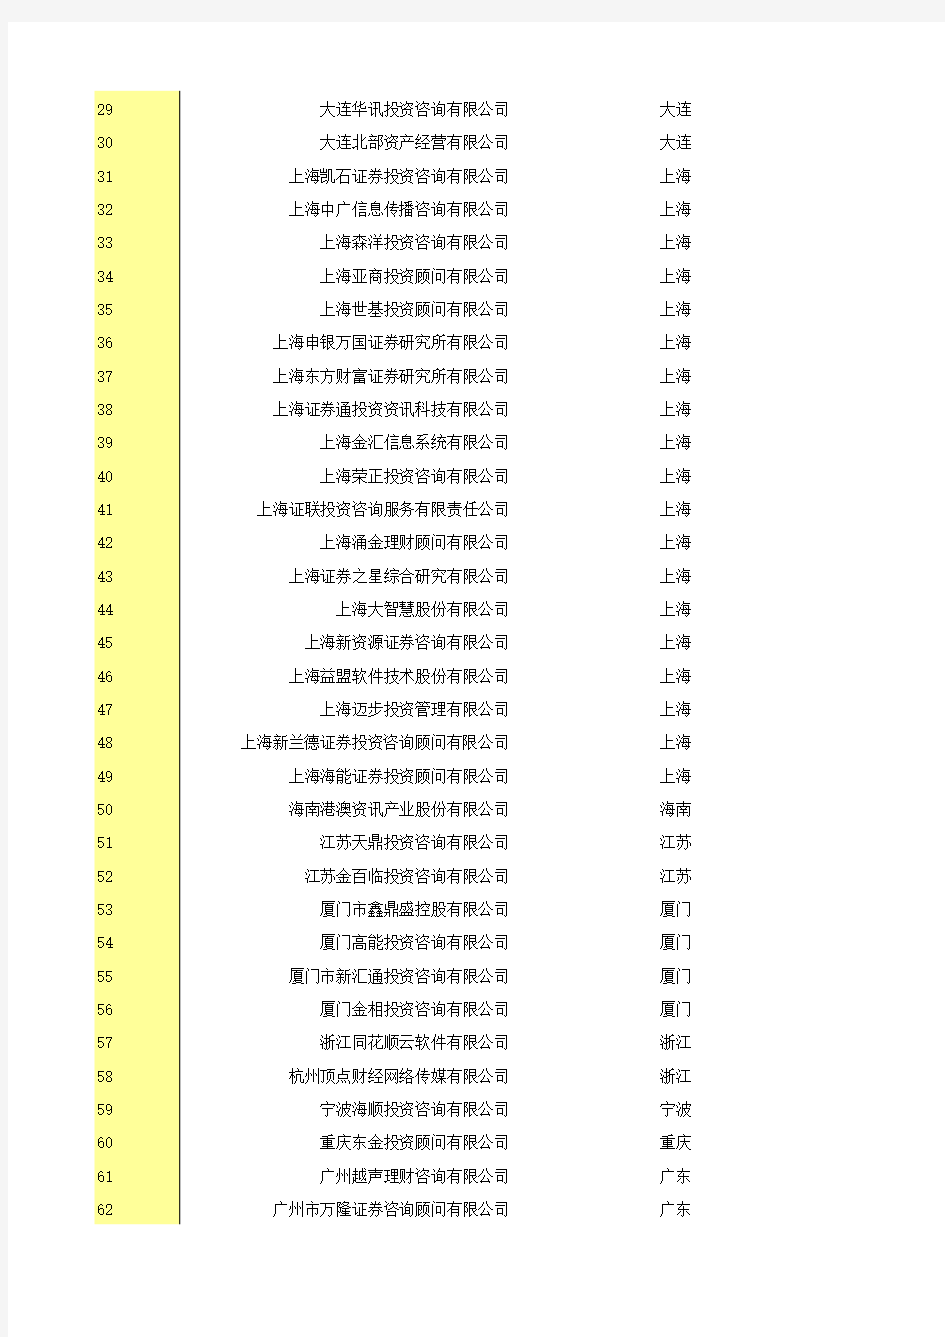 中國證券期貨統計年鑒2014：8-28  2013年證券投資咨詢機構名錄